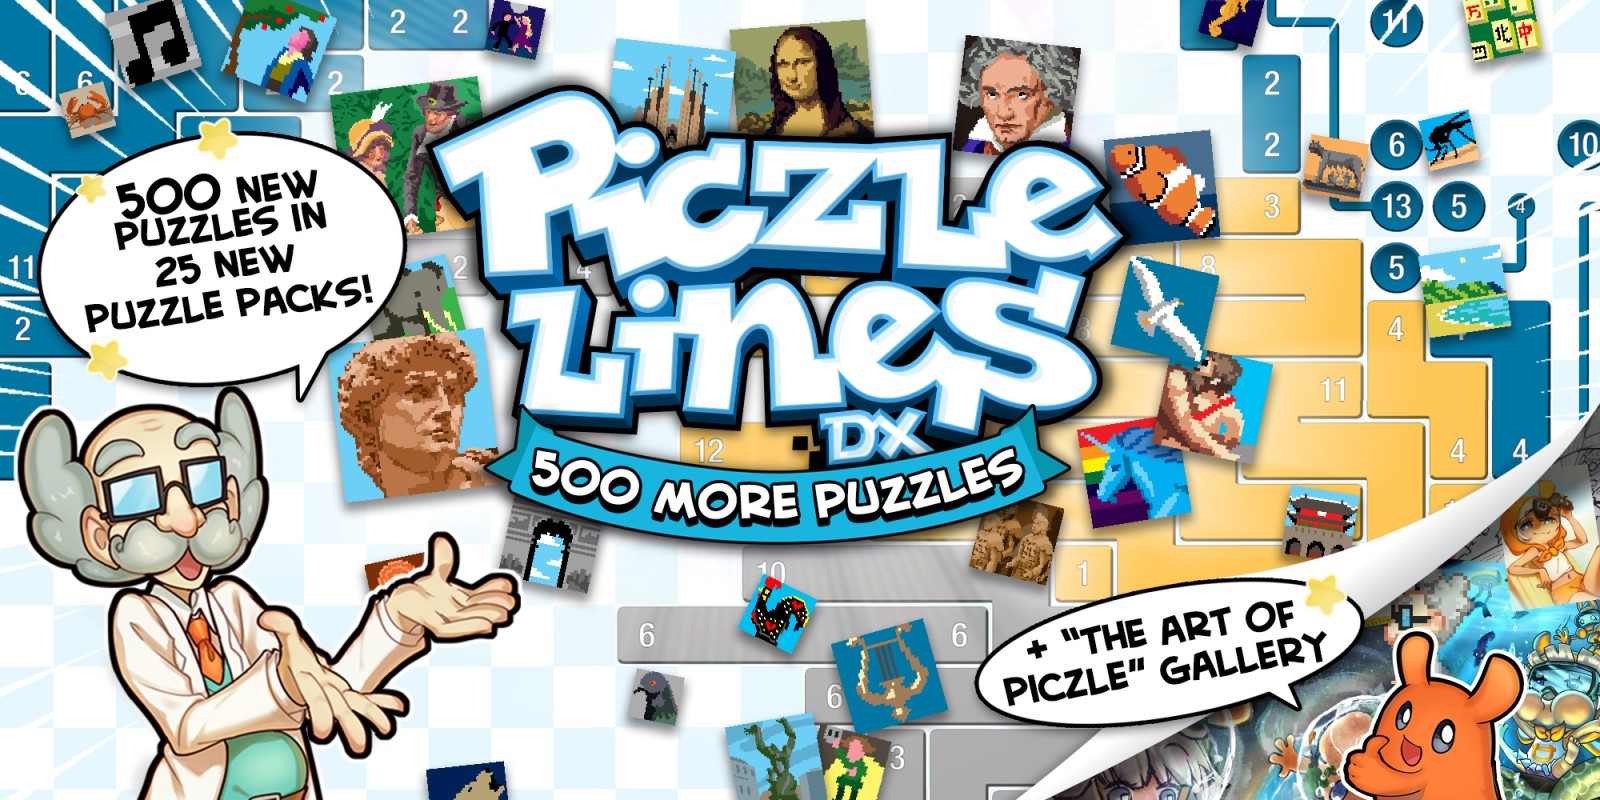 Piczle Lines DX 500 More Puzzles!